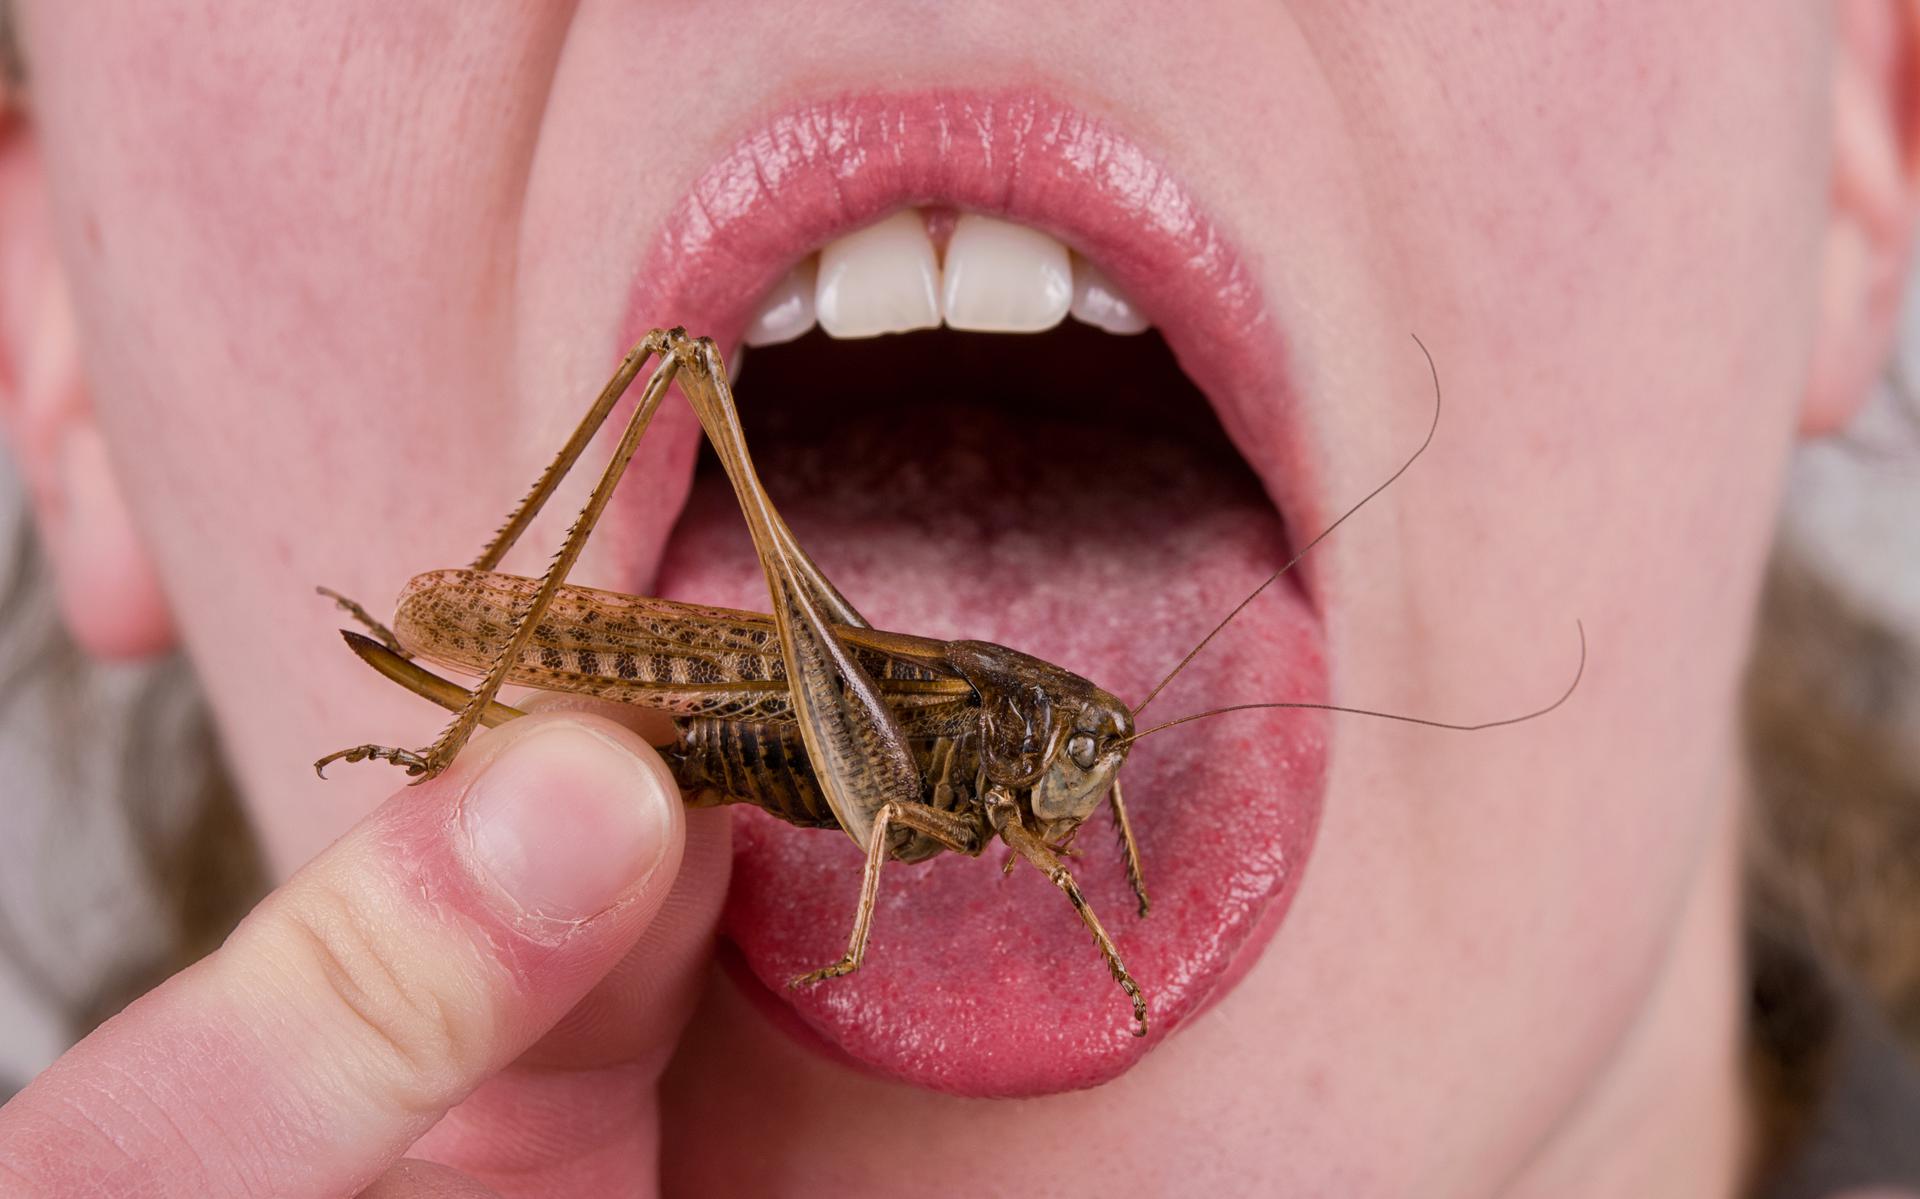 Komkommer het einde Glad Gaan we echt insecten eten in plaats van vlees? Walging is een cruciale  factor als het gaat om het kiezen voor een duurzamer levensstijl | opinie -  Dagblad van het Noorden